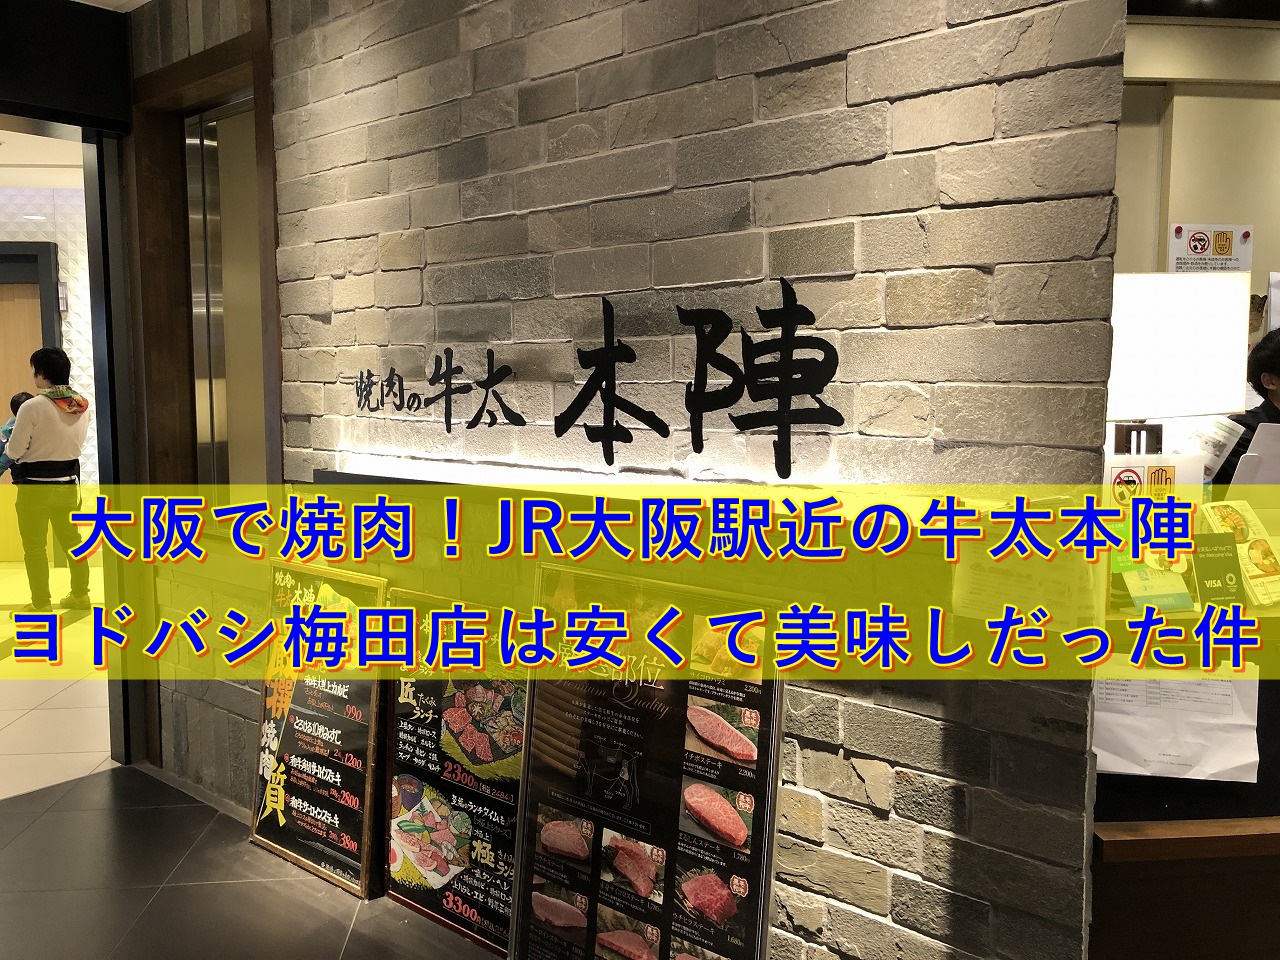 大阪で焼肉 Jr大阪駅近の牛太本陣ヨドバシ梅田店は安くてウマしだった件 50 S夫婦たび